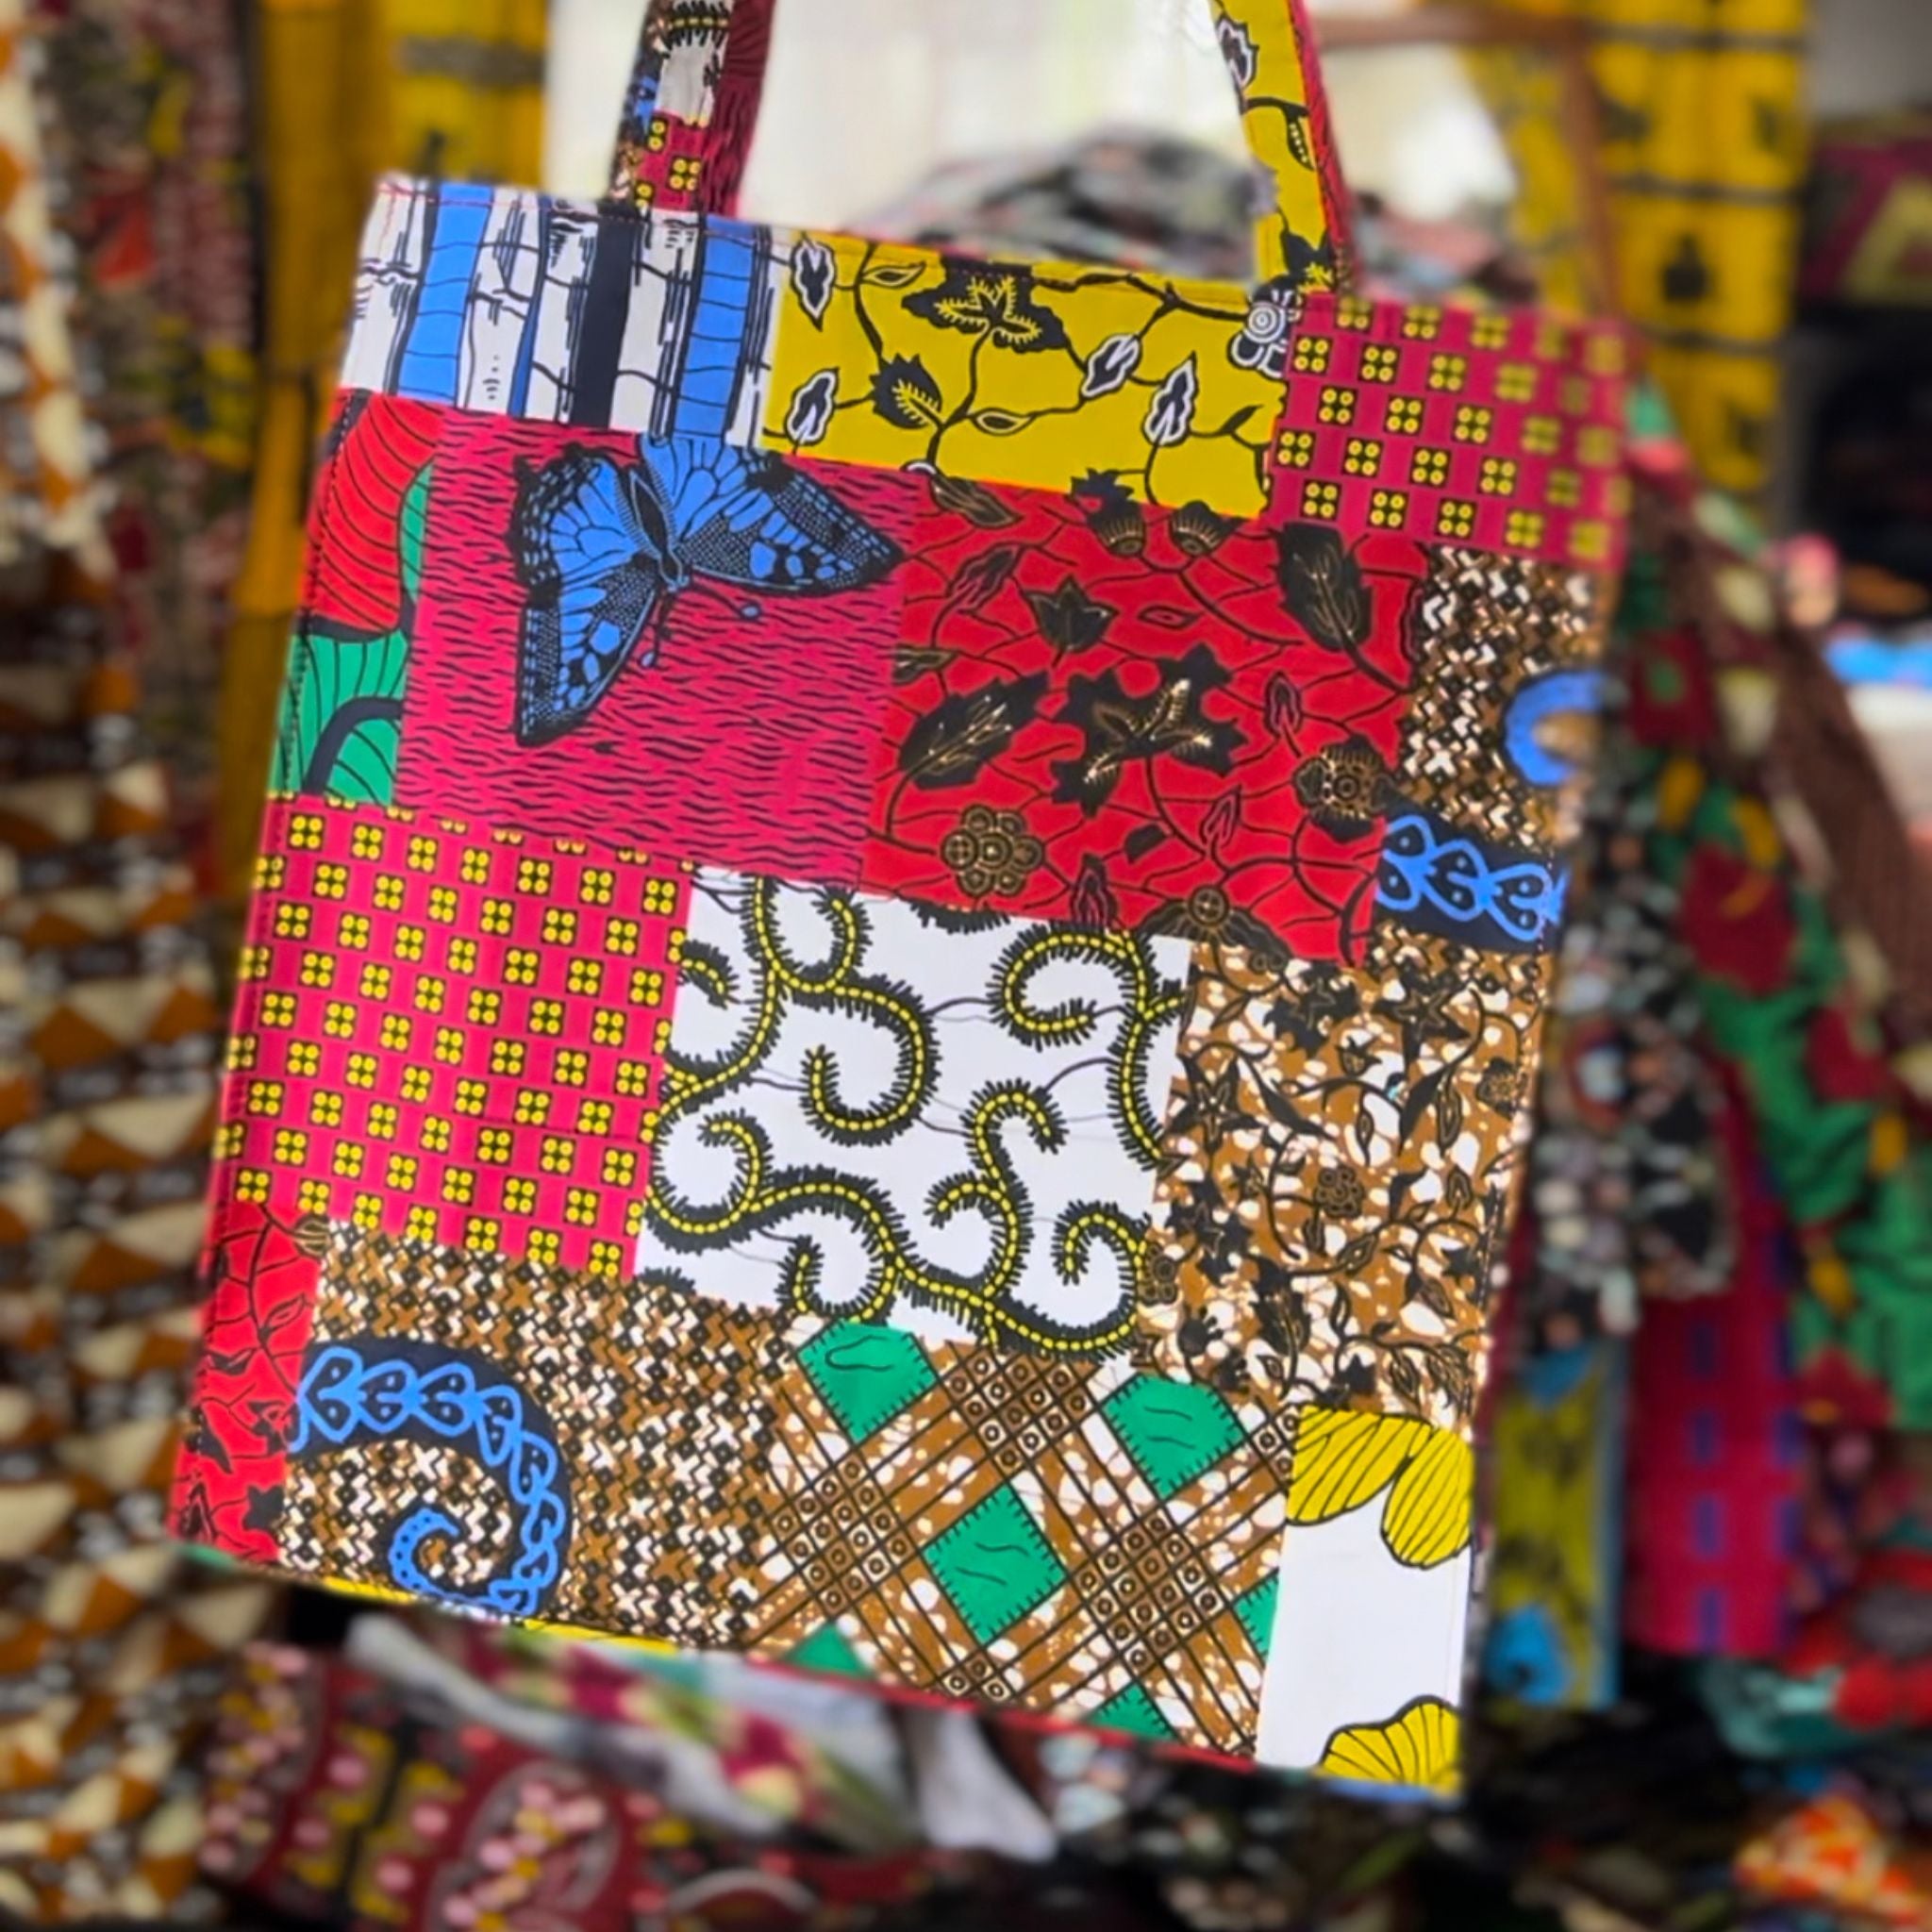 Women's Designer Tote Bags